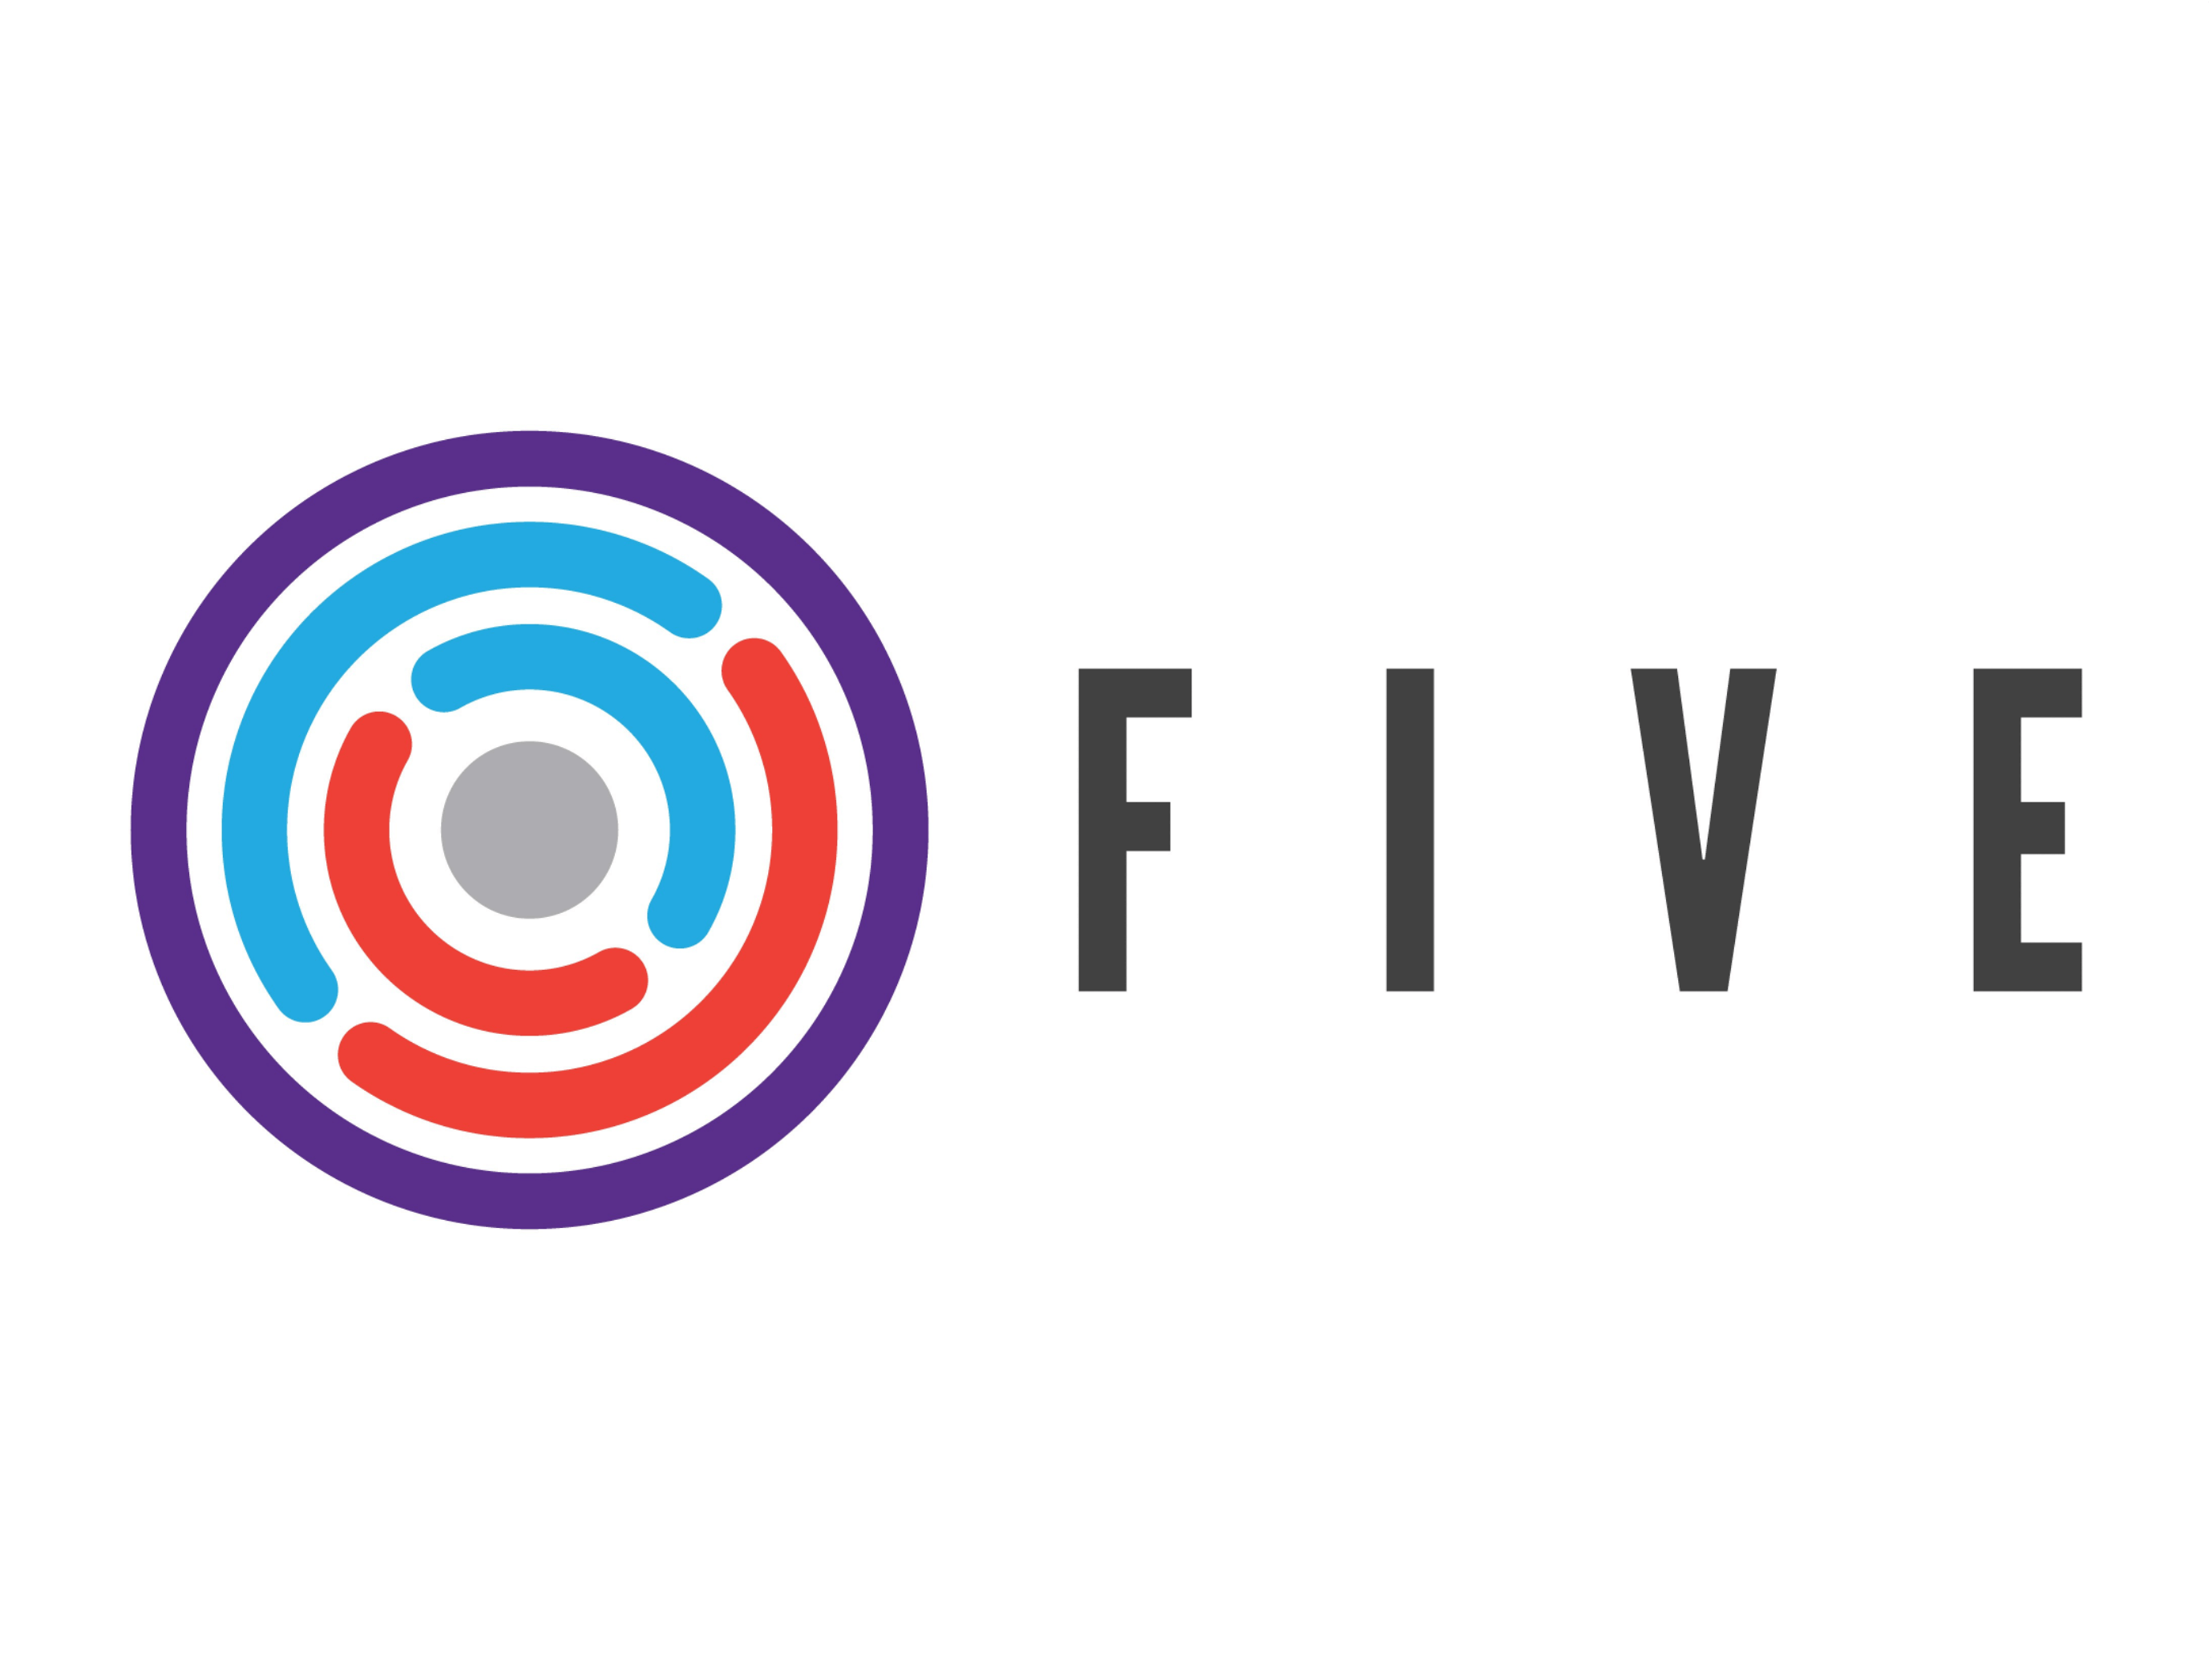 FIVE (1)